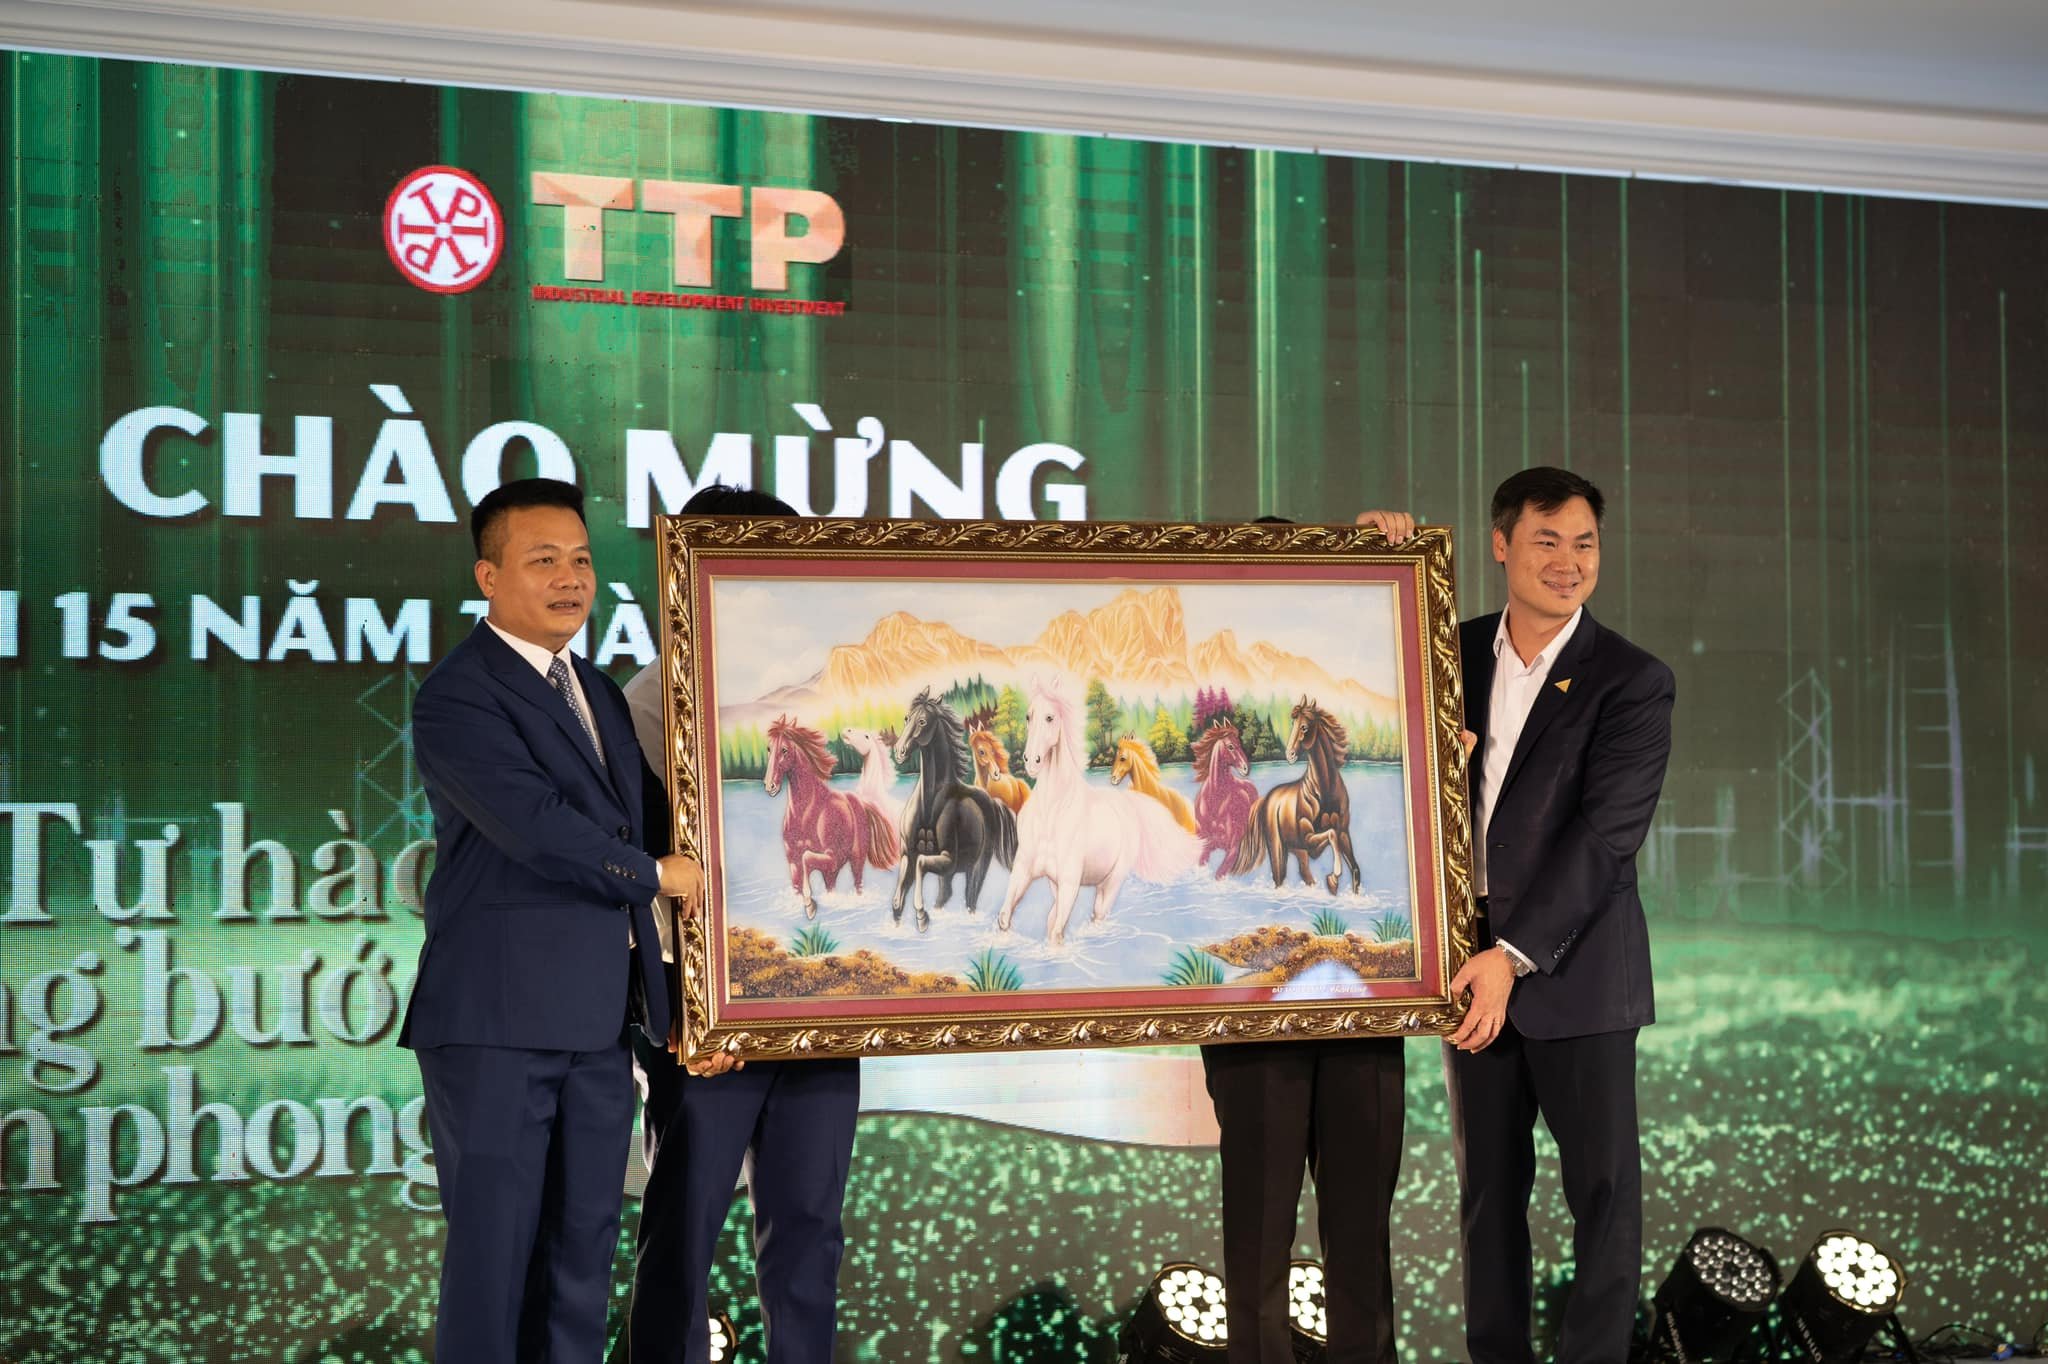 Tổng giám đốc Vũ Cương Quyết trao tặng món quà đầy ý nghĩa cho TTP Group